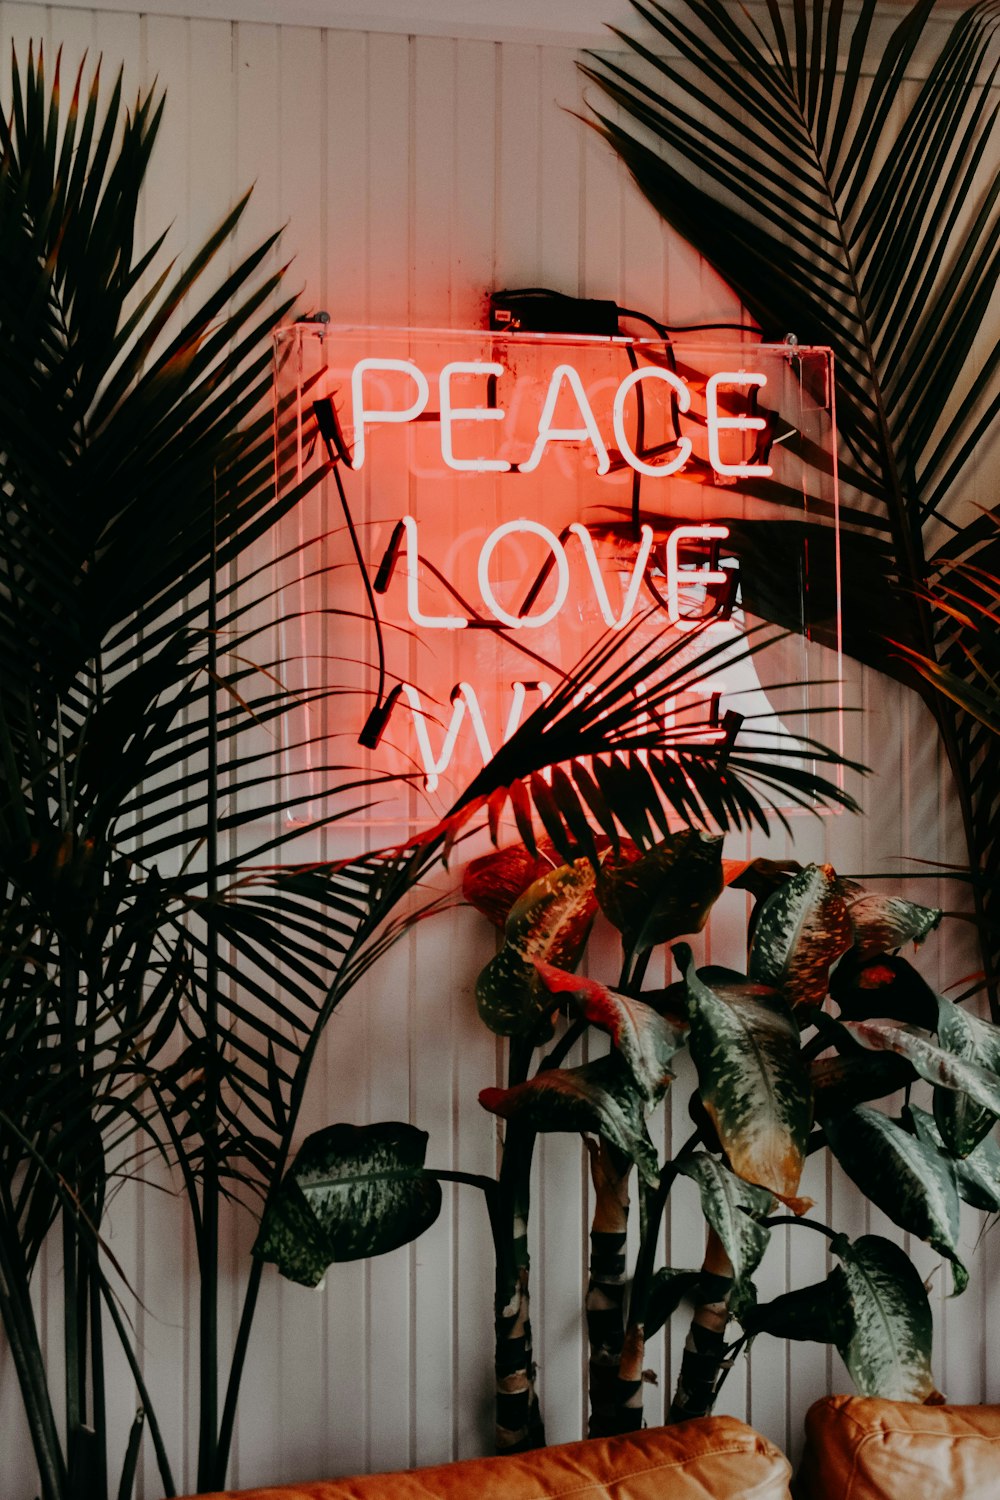 Peace Love Neonreklame in der Nähe von grünen Blattpflanzen